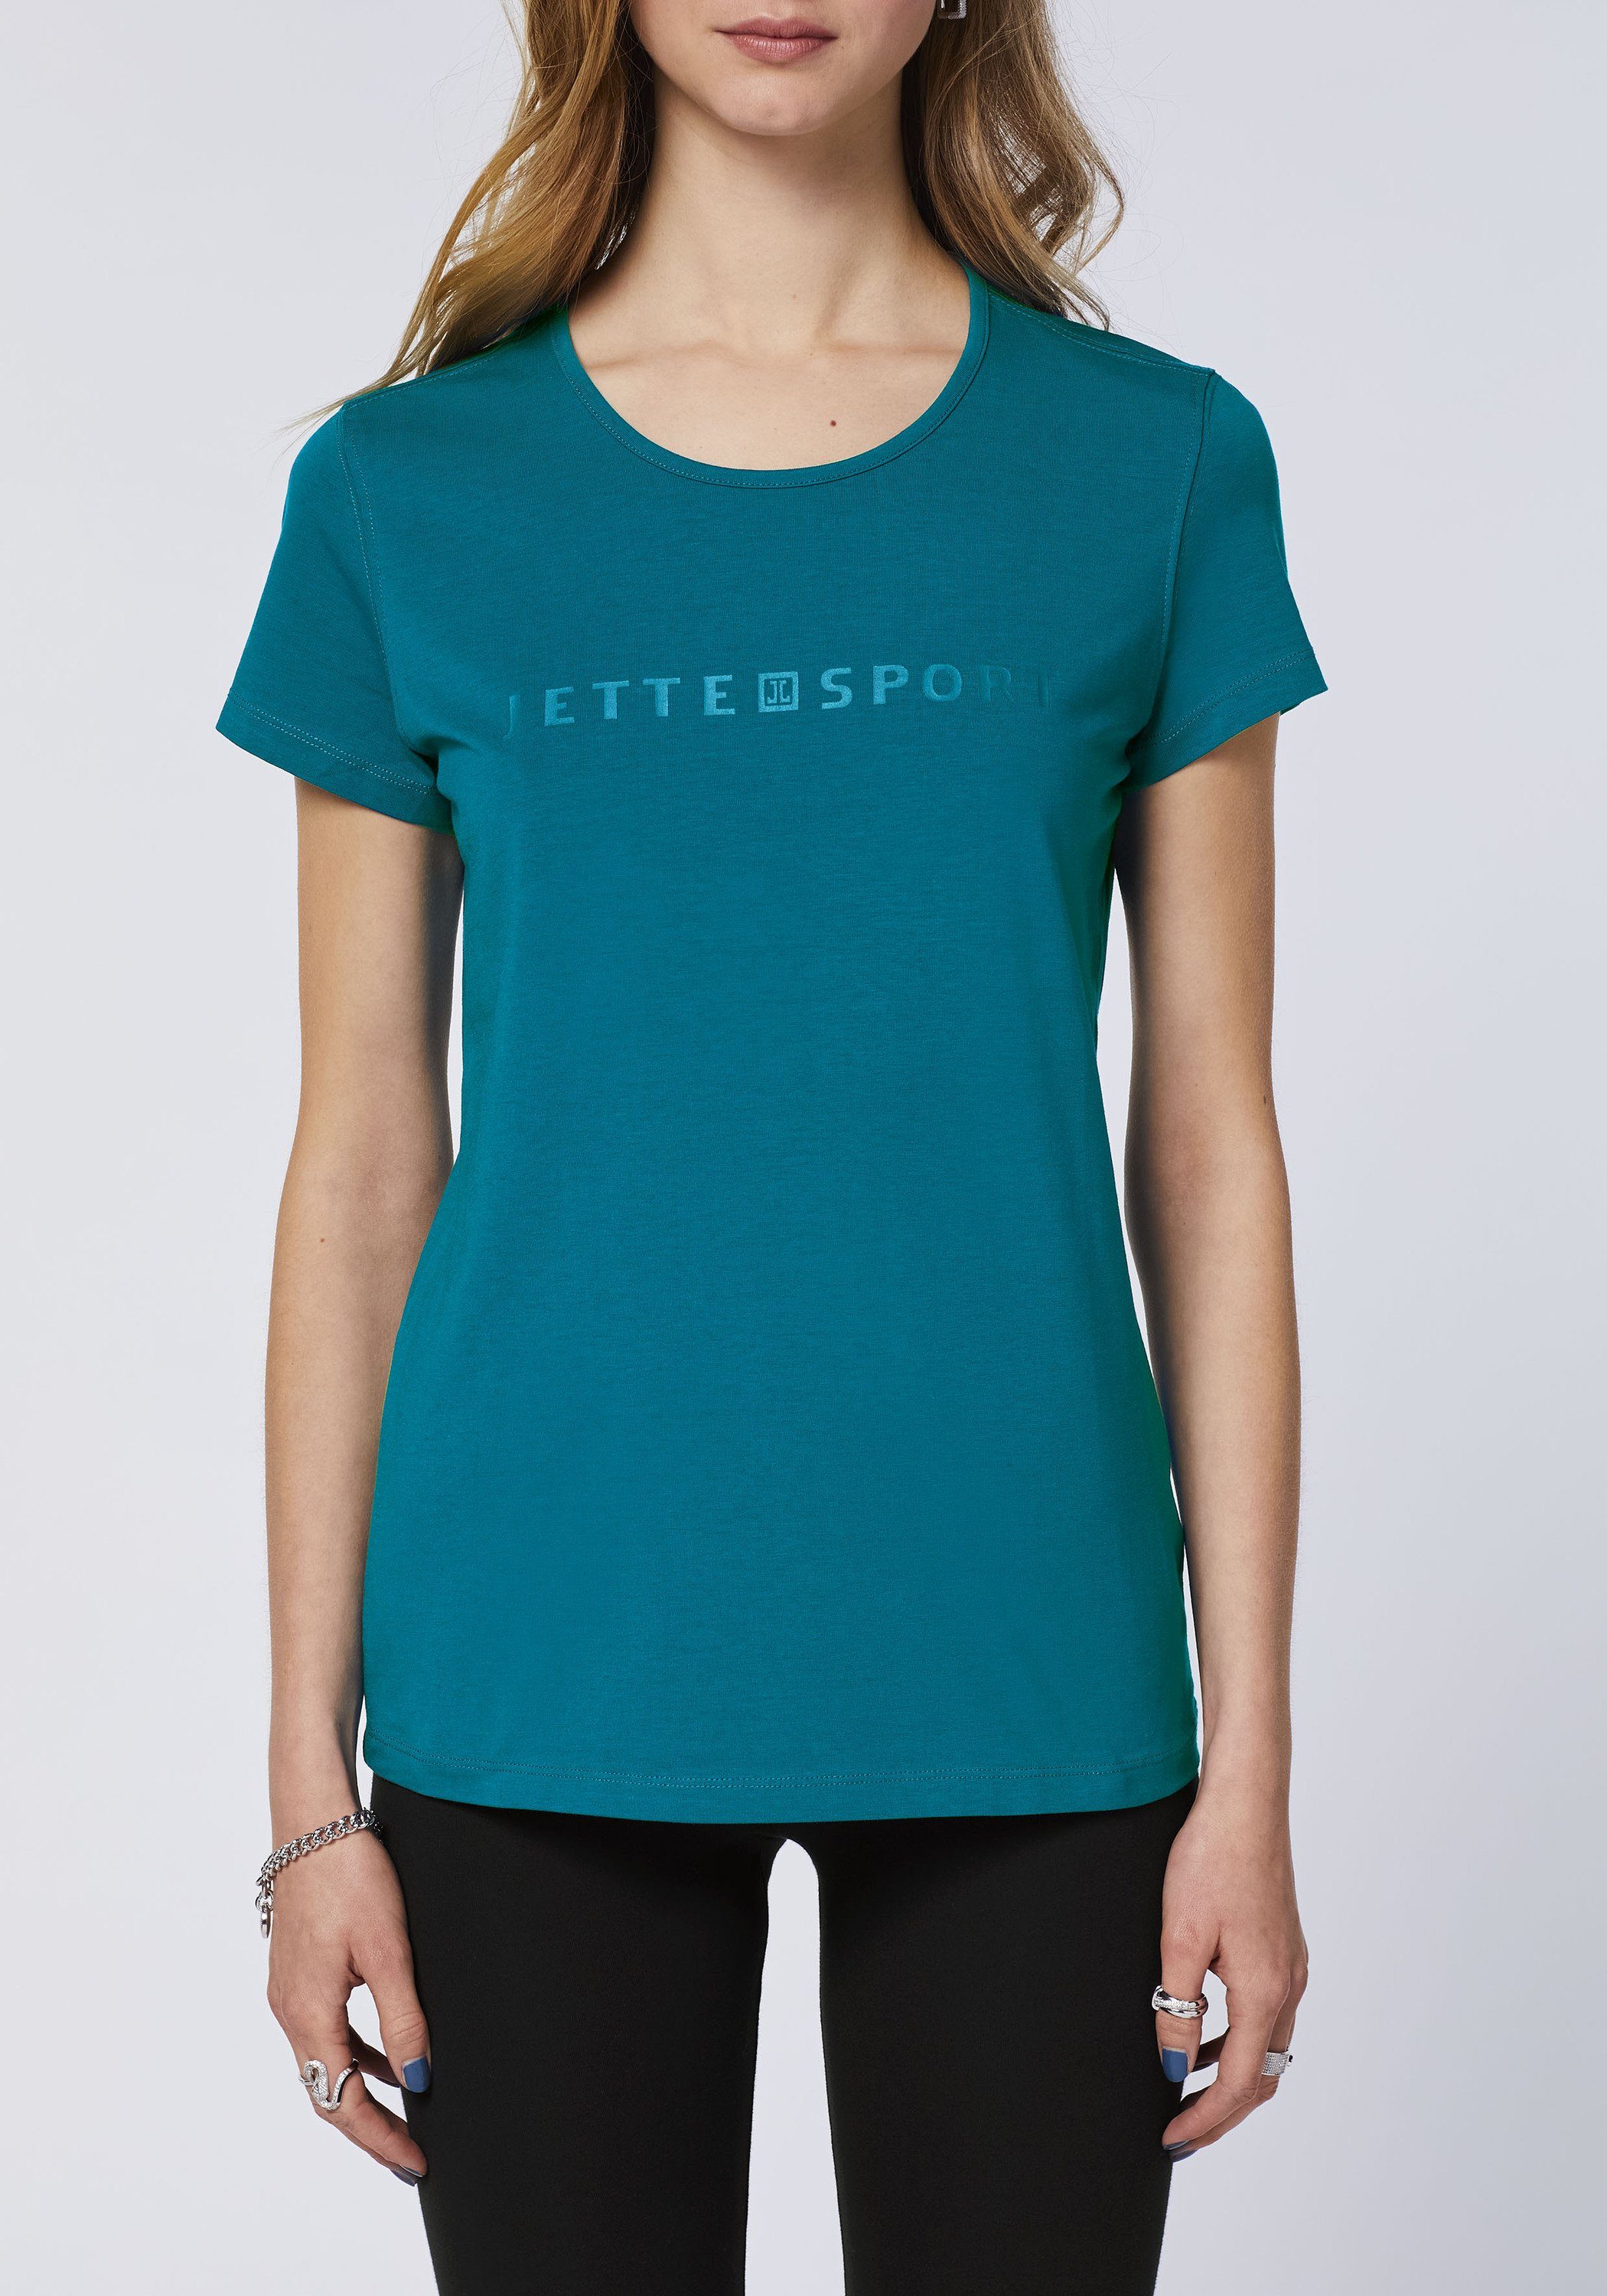 JETTE SPORT Print-Shirt mit 19-4540 Lagoon Deep Label-Print